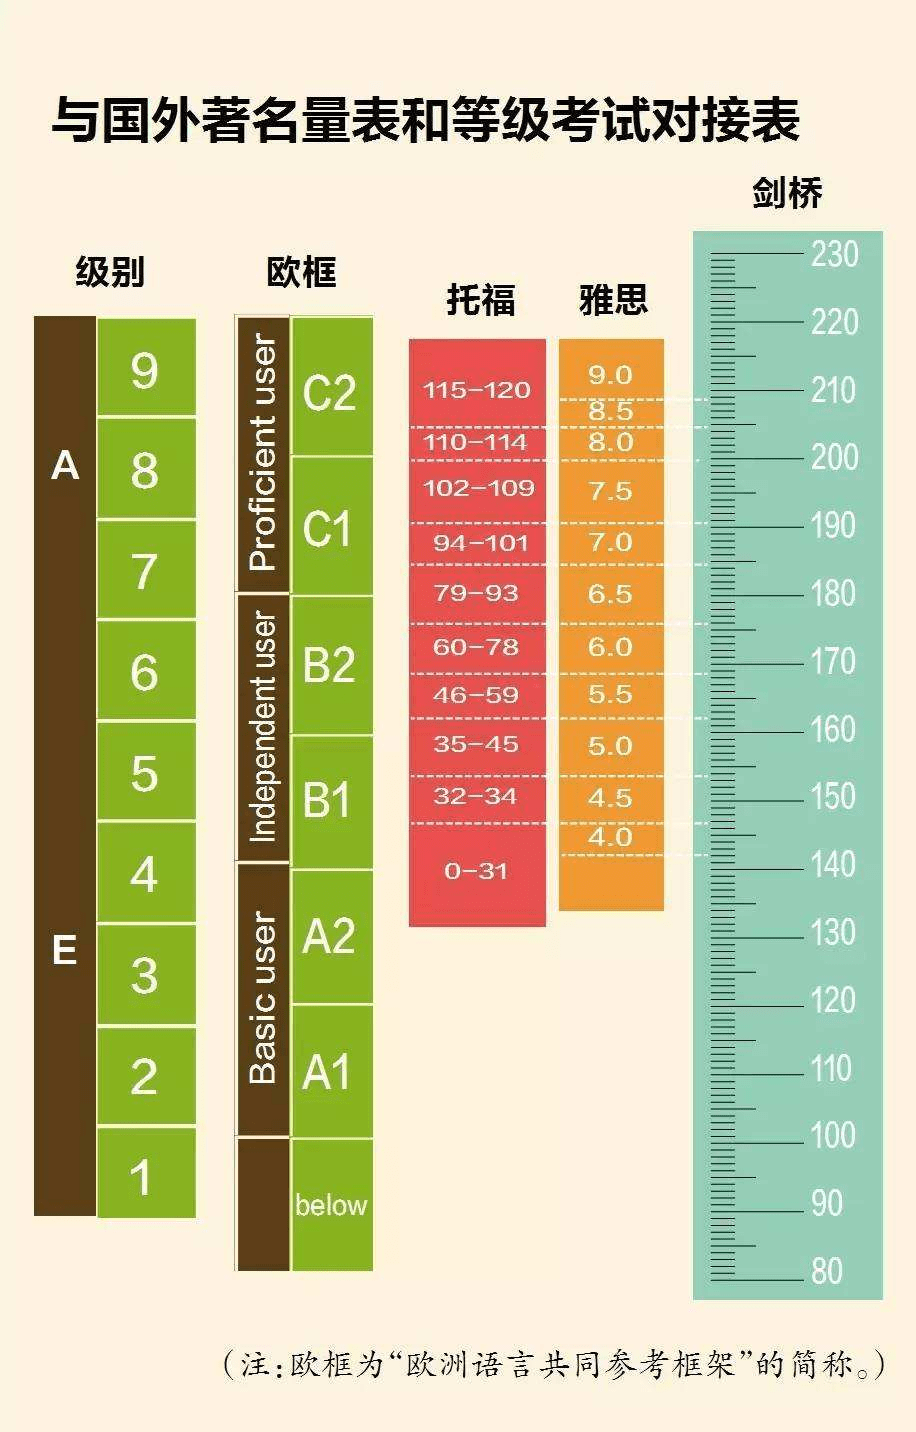 中国英语能力等级量表又添新项